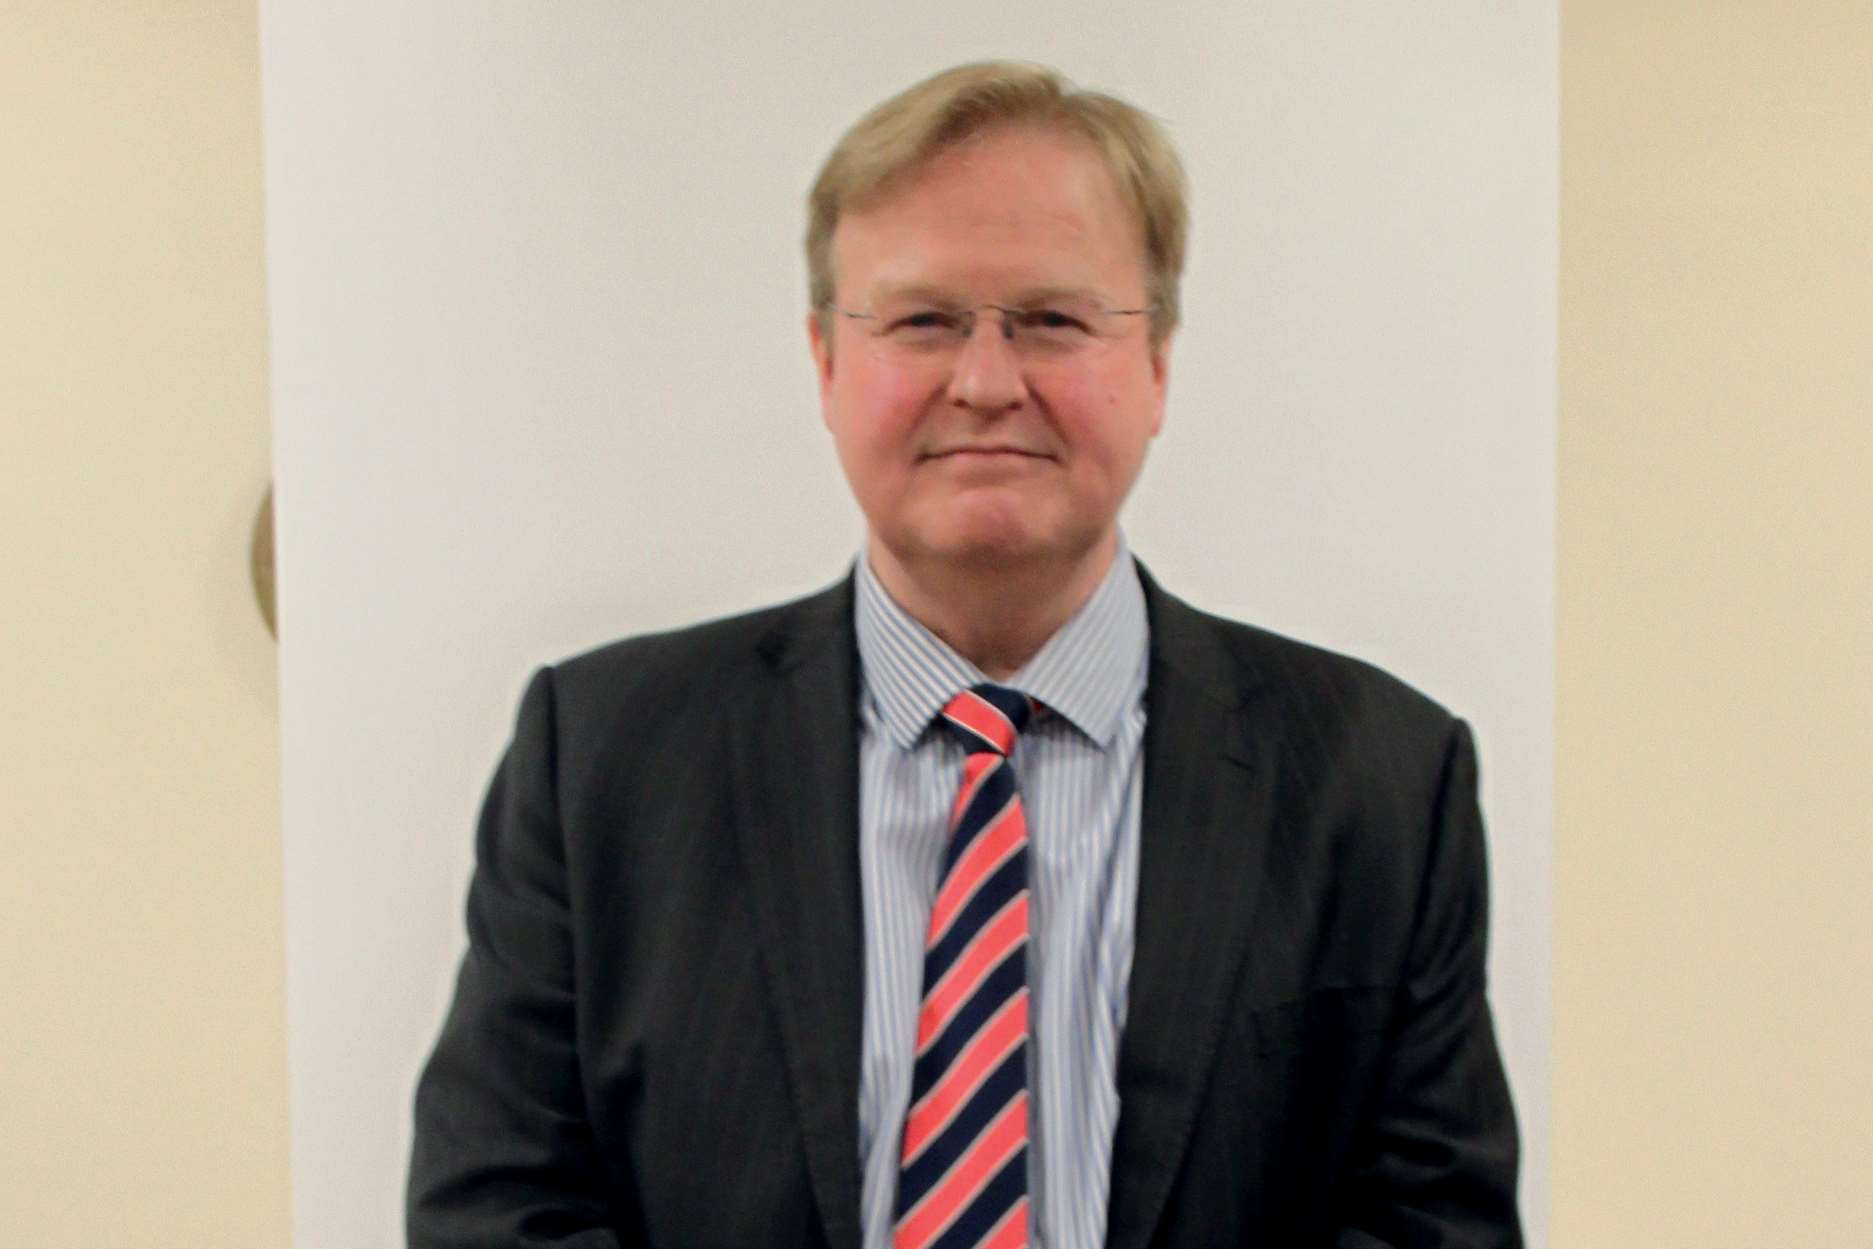 Cllr Neil Bell, deputy leader of Ashford Borough Council